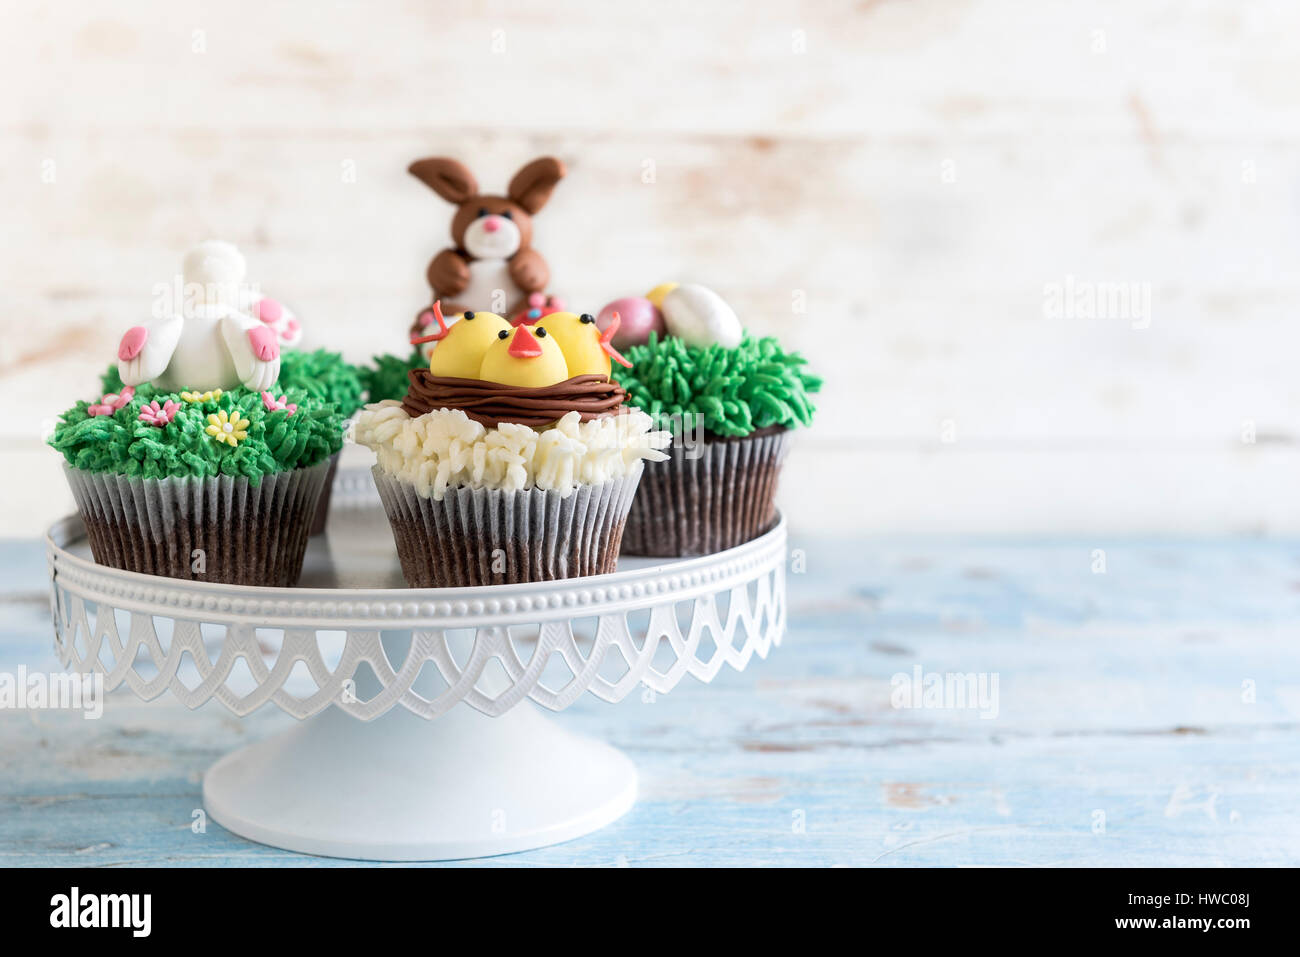 Servi Easter cup cakes sur fond de bois avec des espaces blancs, selective focus Banque D'Images